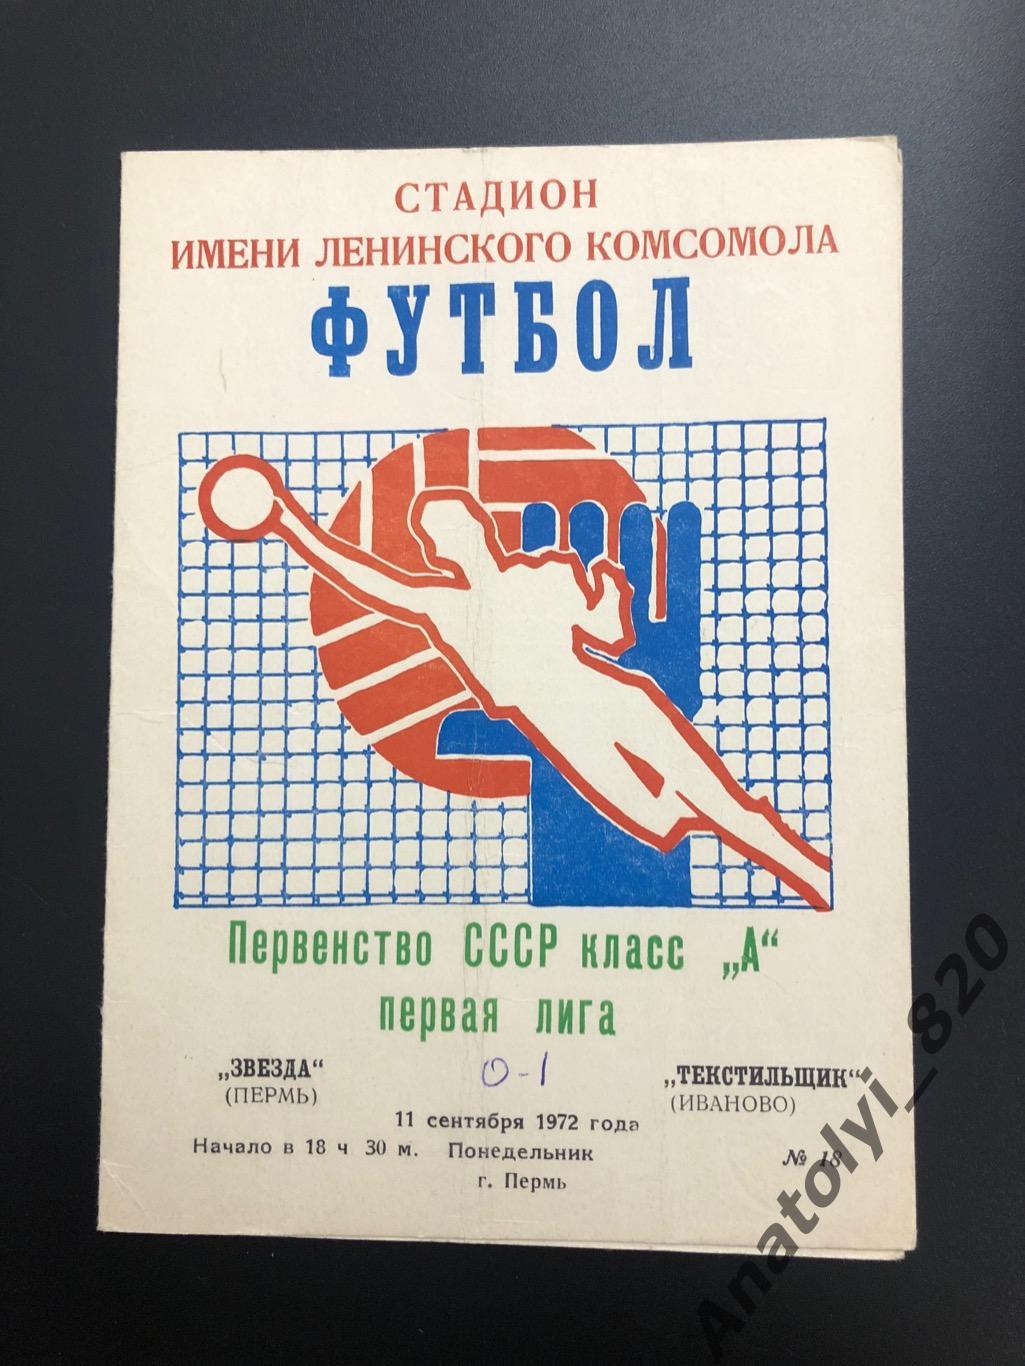 Звезда Пермь - Текстильщик Иваново, 1972 год